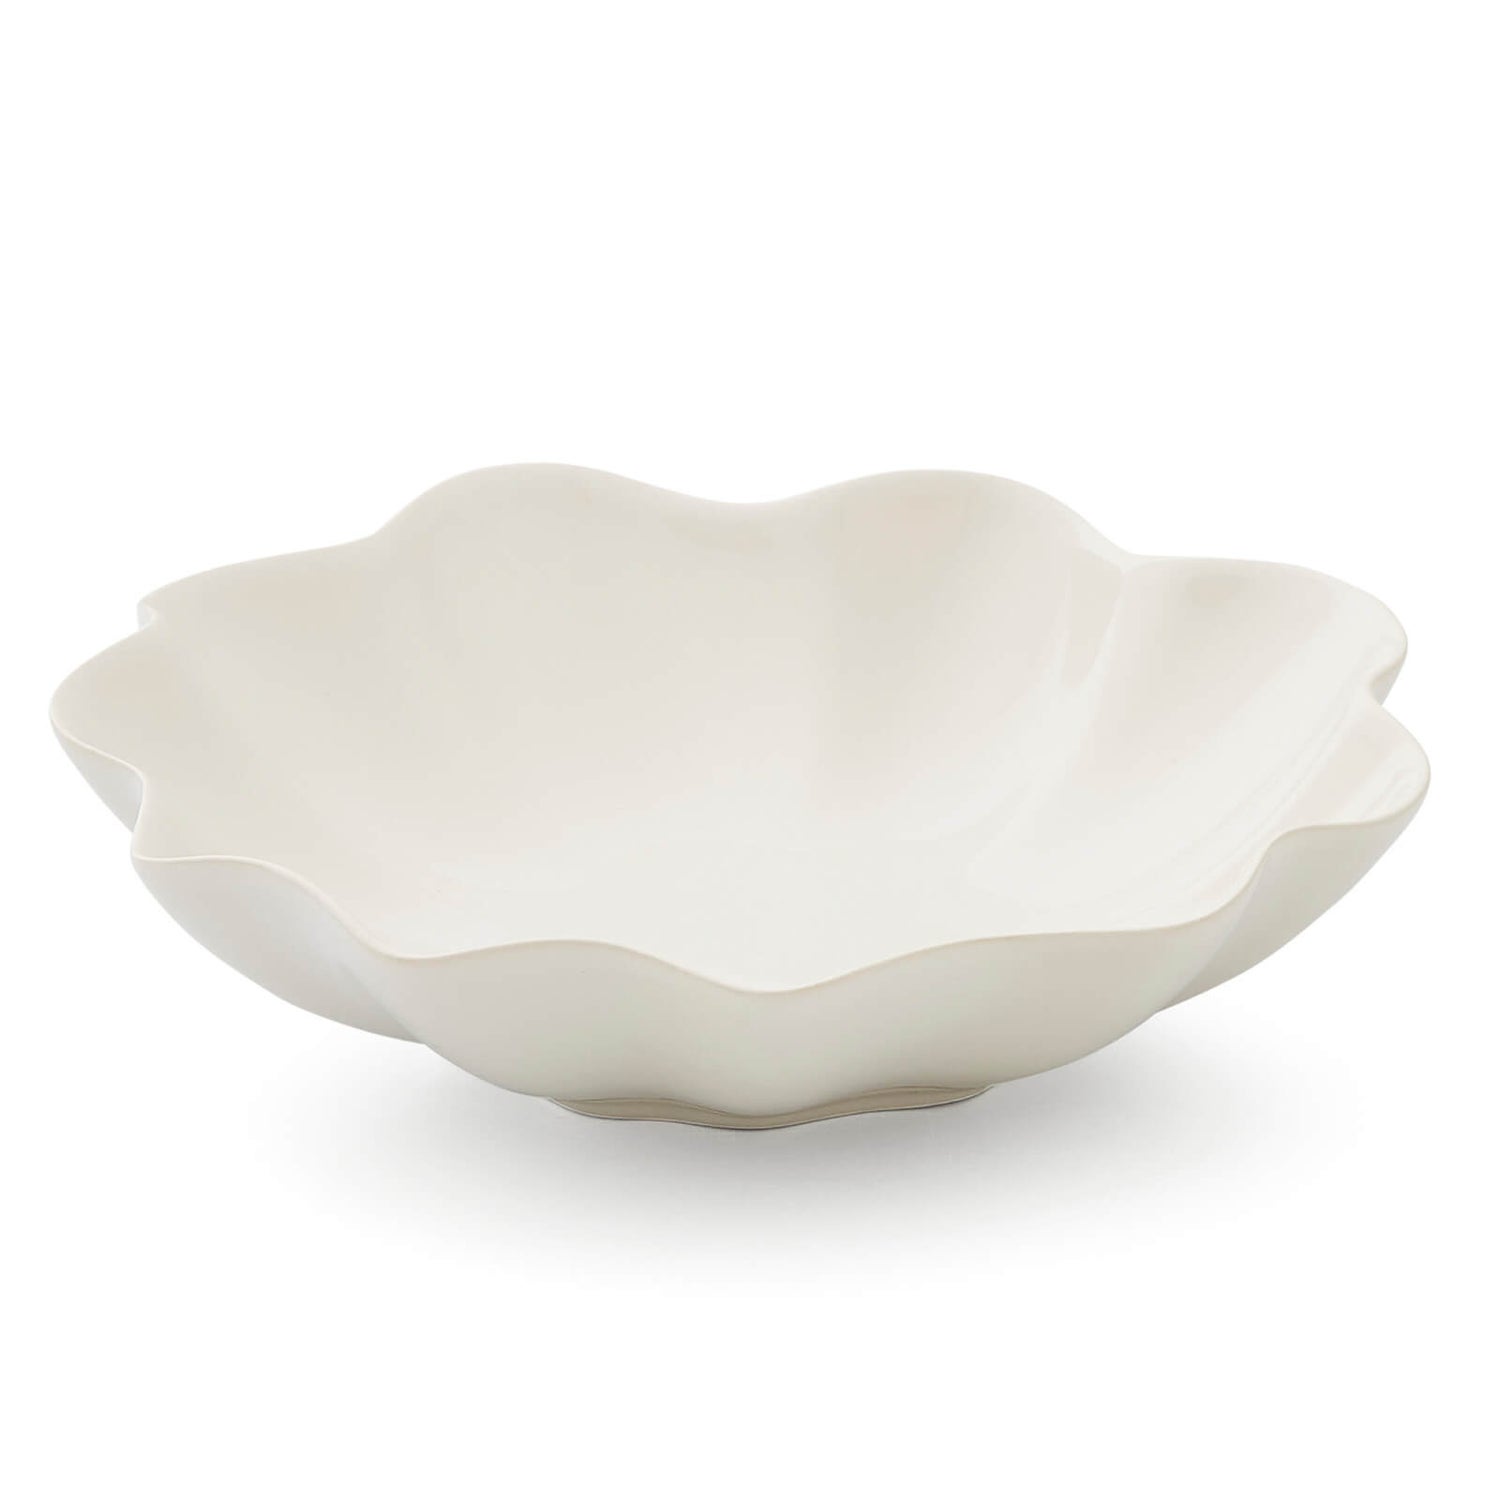 Sophie Conran Floret Serving Bowl - Cream - Medium